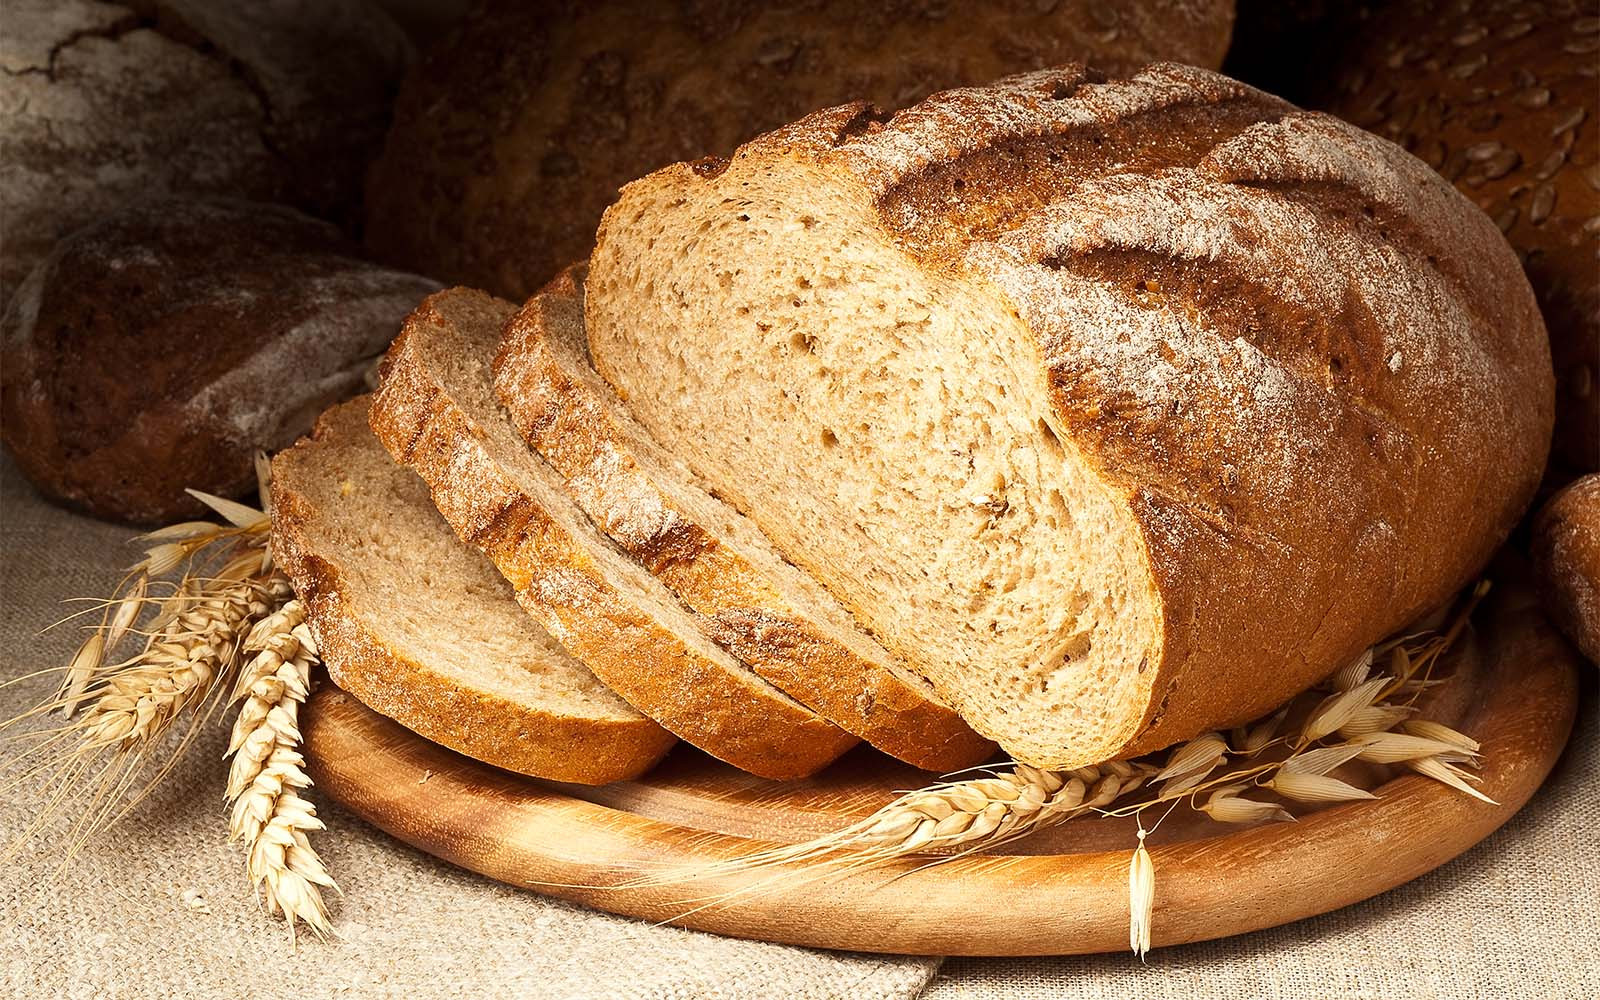 Nederlands graan voor Nederlands brood: het kan